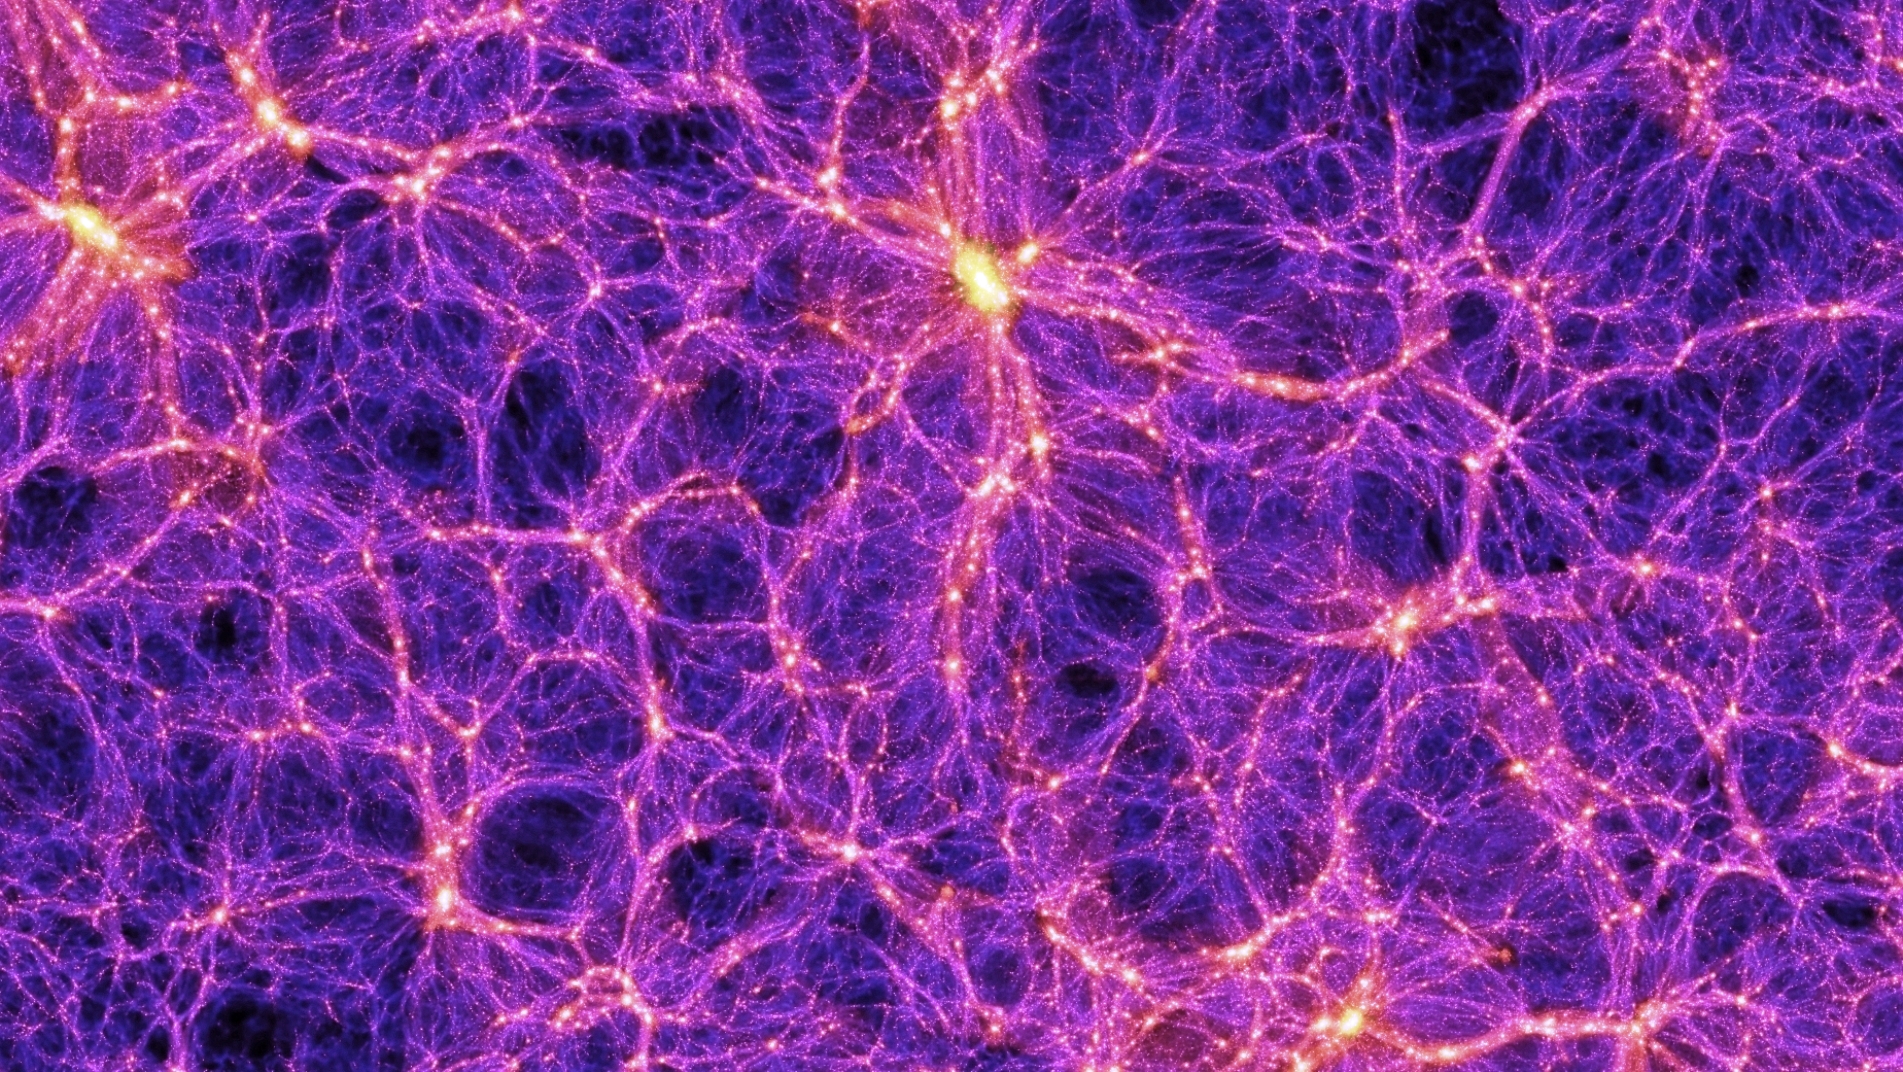 Les simulations numériques de la formation des grandes structures de l’Univers permettraient de comprendre comment la matière noire pourrait avoir donné les premiers trous noirs supermassifs. Ici, une image extraite d'une de ces simulations réalisées avec des superordinateurs dans le cadre du&nbsp;Millennium Simulation Project – dont l'objectif est d'en savoir plus sur la manière dont les galaxies et les amas de galaxies se forment et se rassemblent pour créer, à grande échelle, des structures en forme de filaments. L'image est suffisamment précise pour comprendre bien des aspects de l'univers observable en utilisant la théorie de Newton de la gravitation. ©&nbsp;Max Planck Institute for Astrophysics, Springel et al.